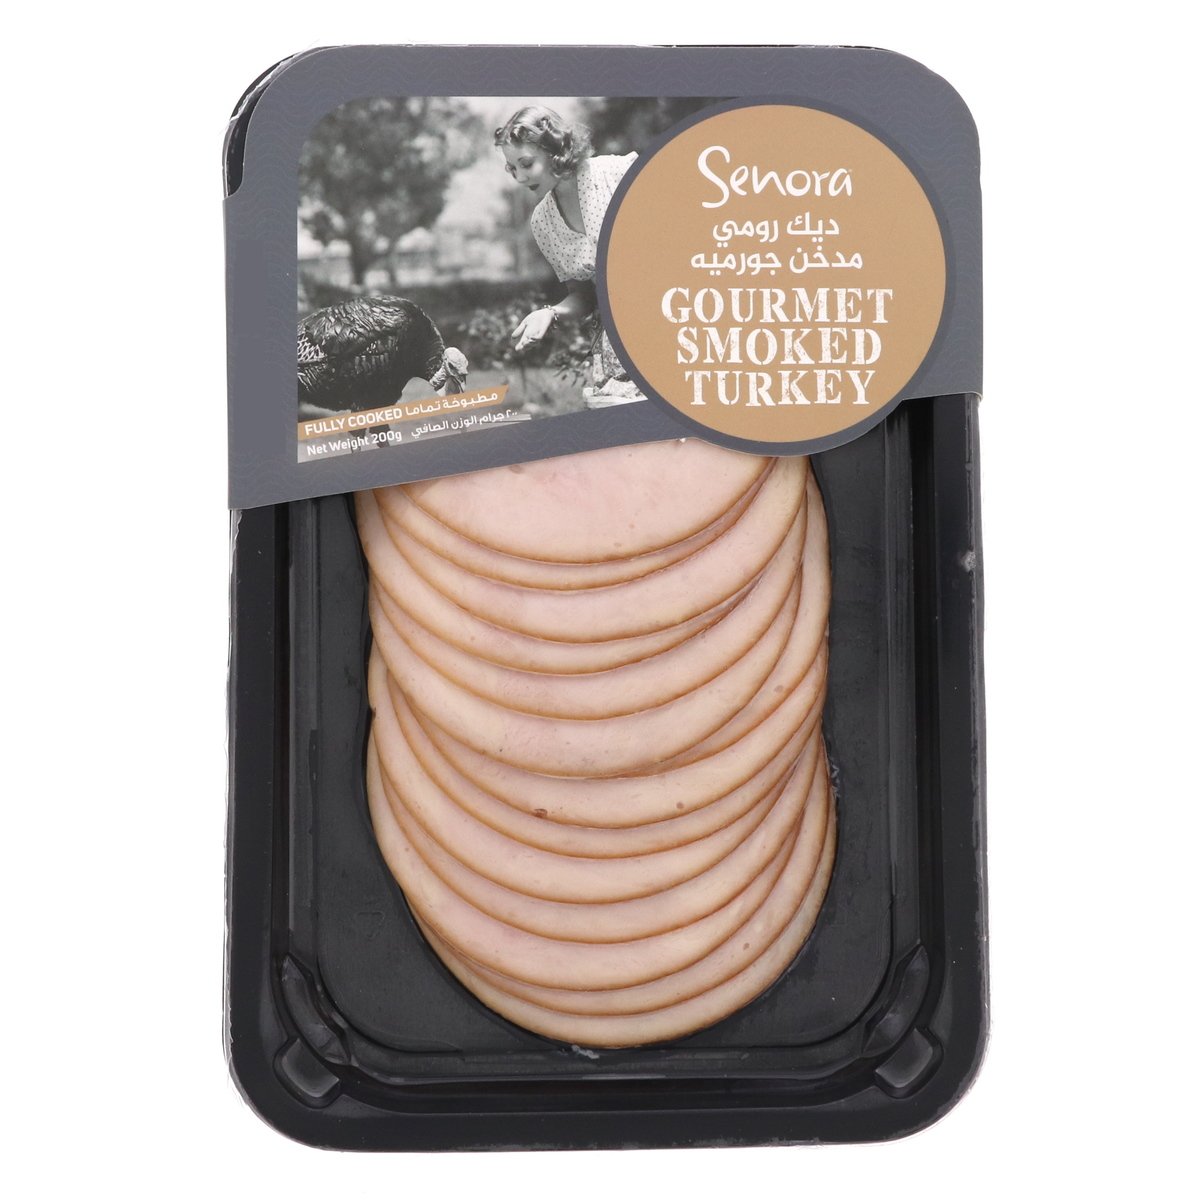 Senora Gourmet Smoked Turkey 200 g